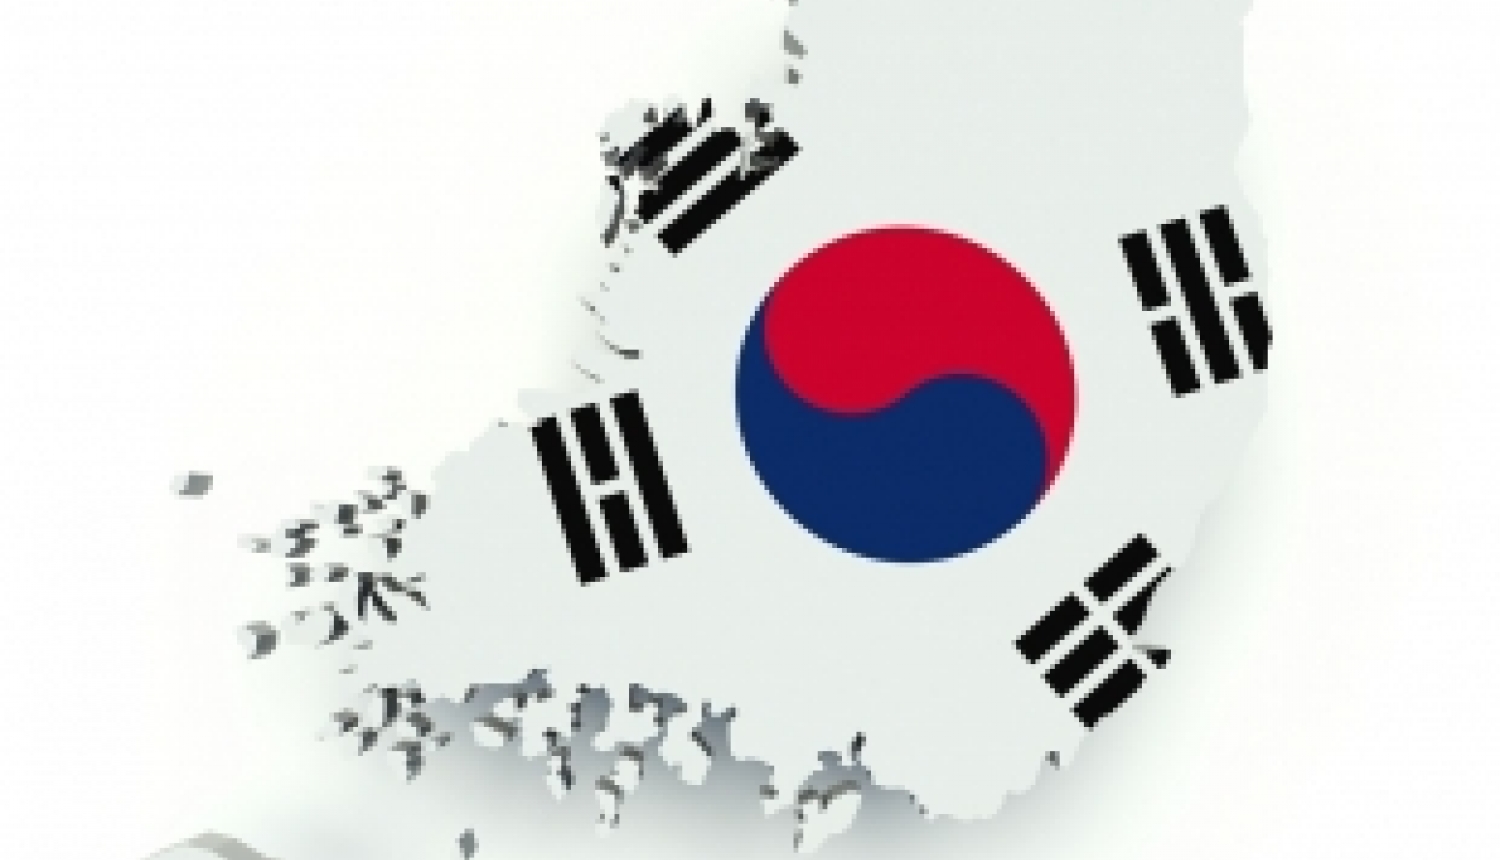 Vēl novembrī iespēja pieteikties studijām un pētniecībai Korejā